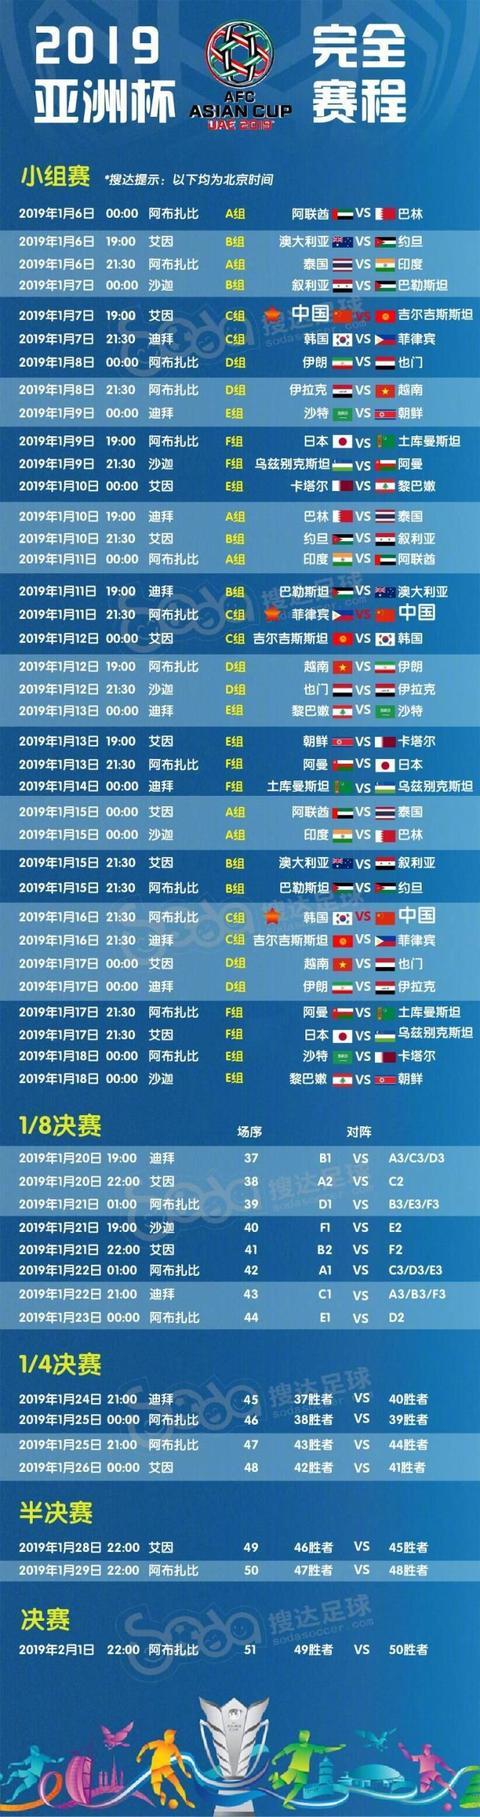 世界杯亚洲预选赛程表